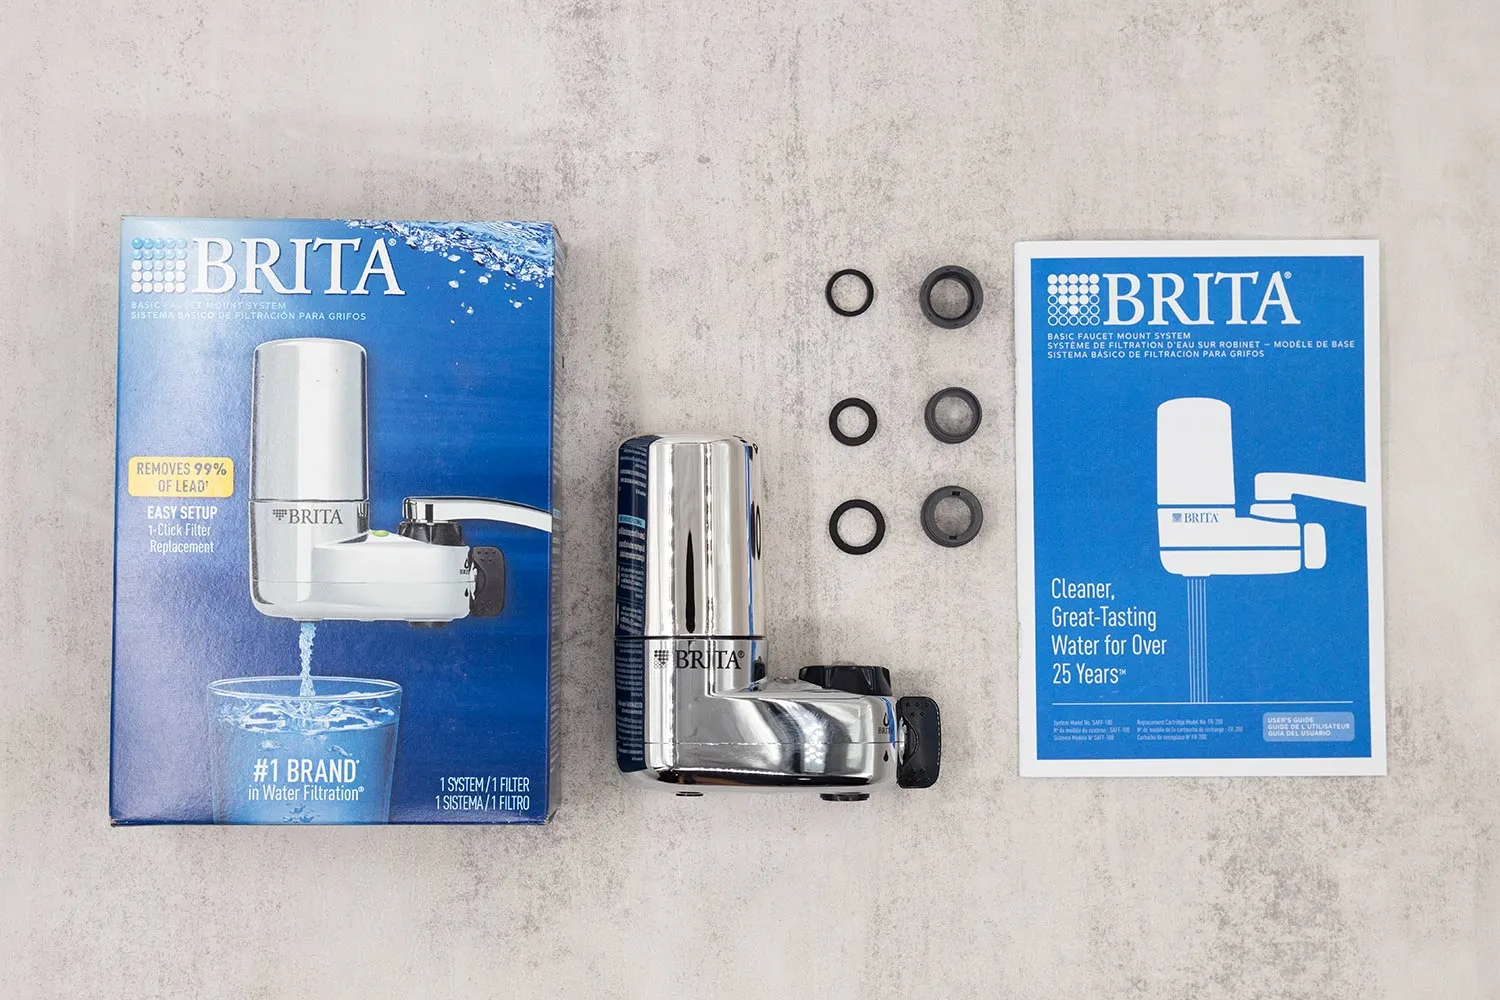 Brita Système de filtration d'eau sur robinet, modèle de base - 1